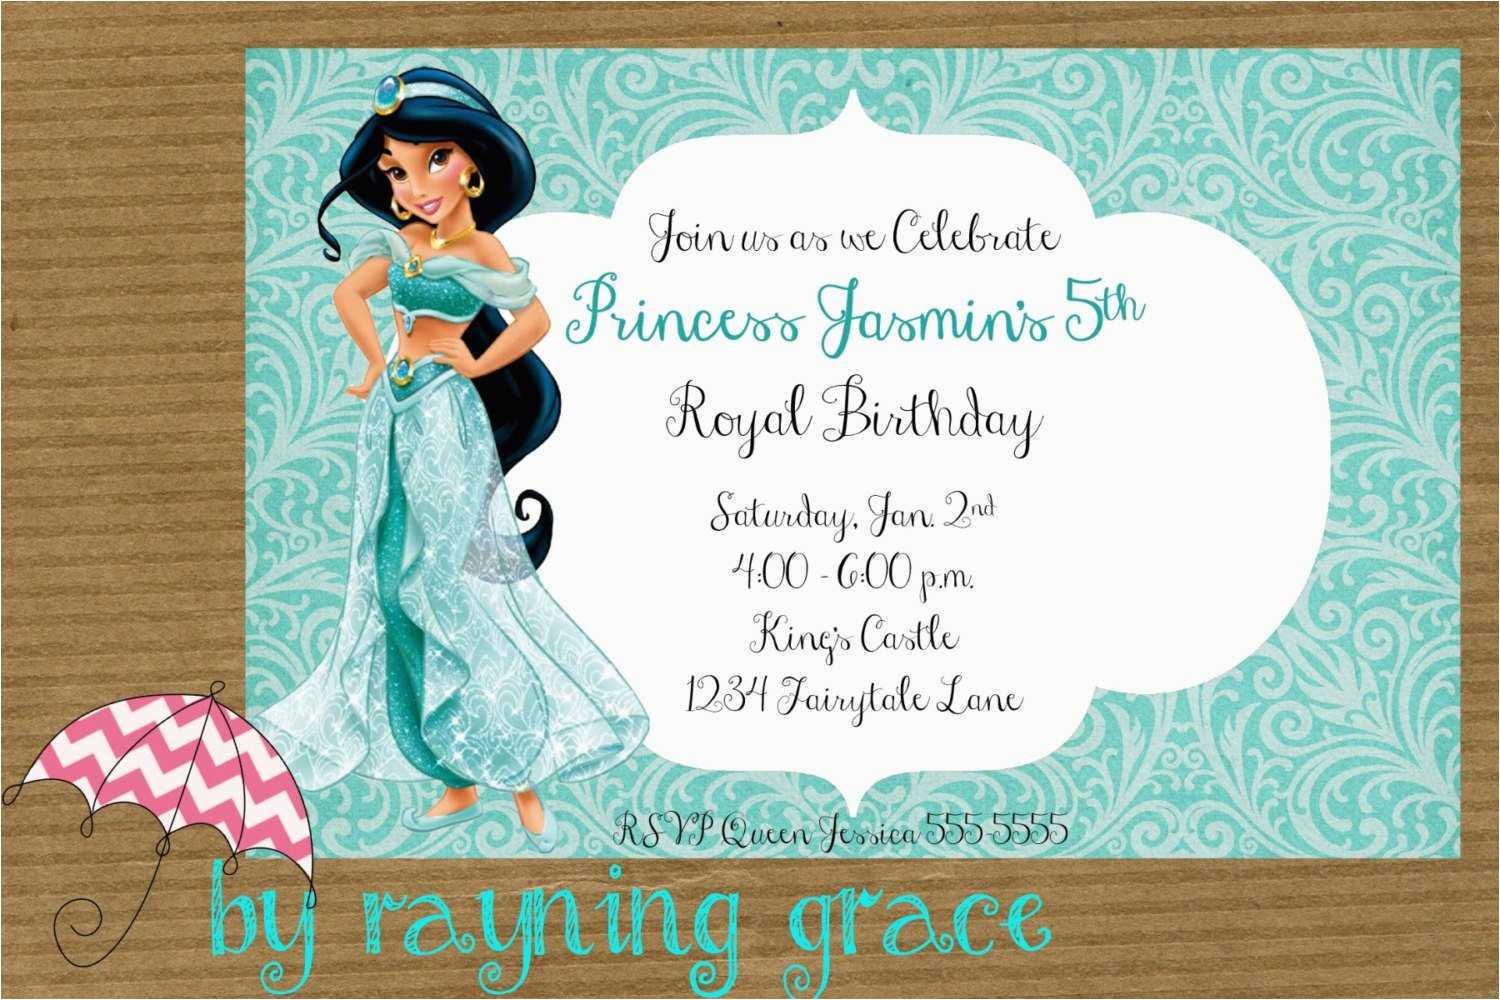 disney princess jasmine birthday party